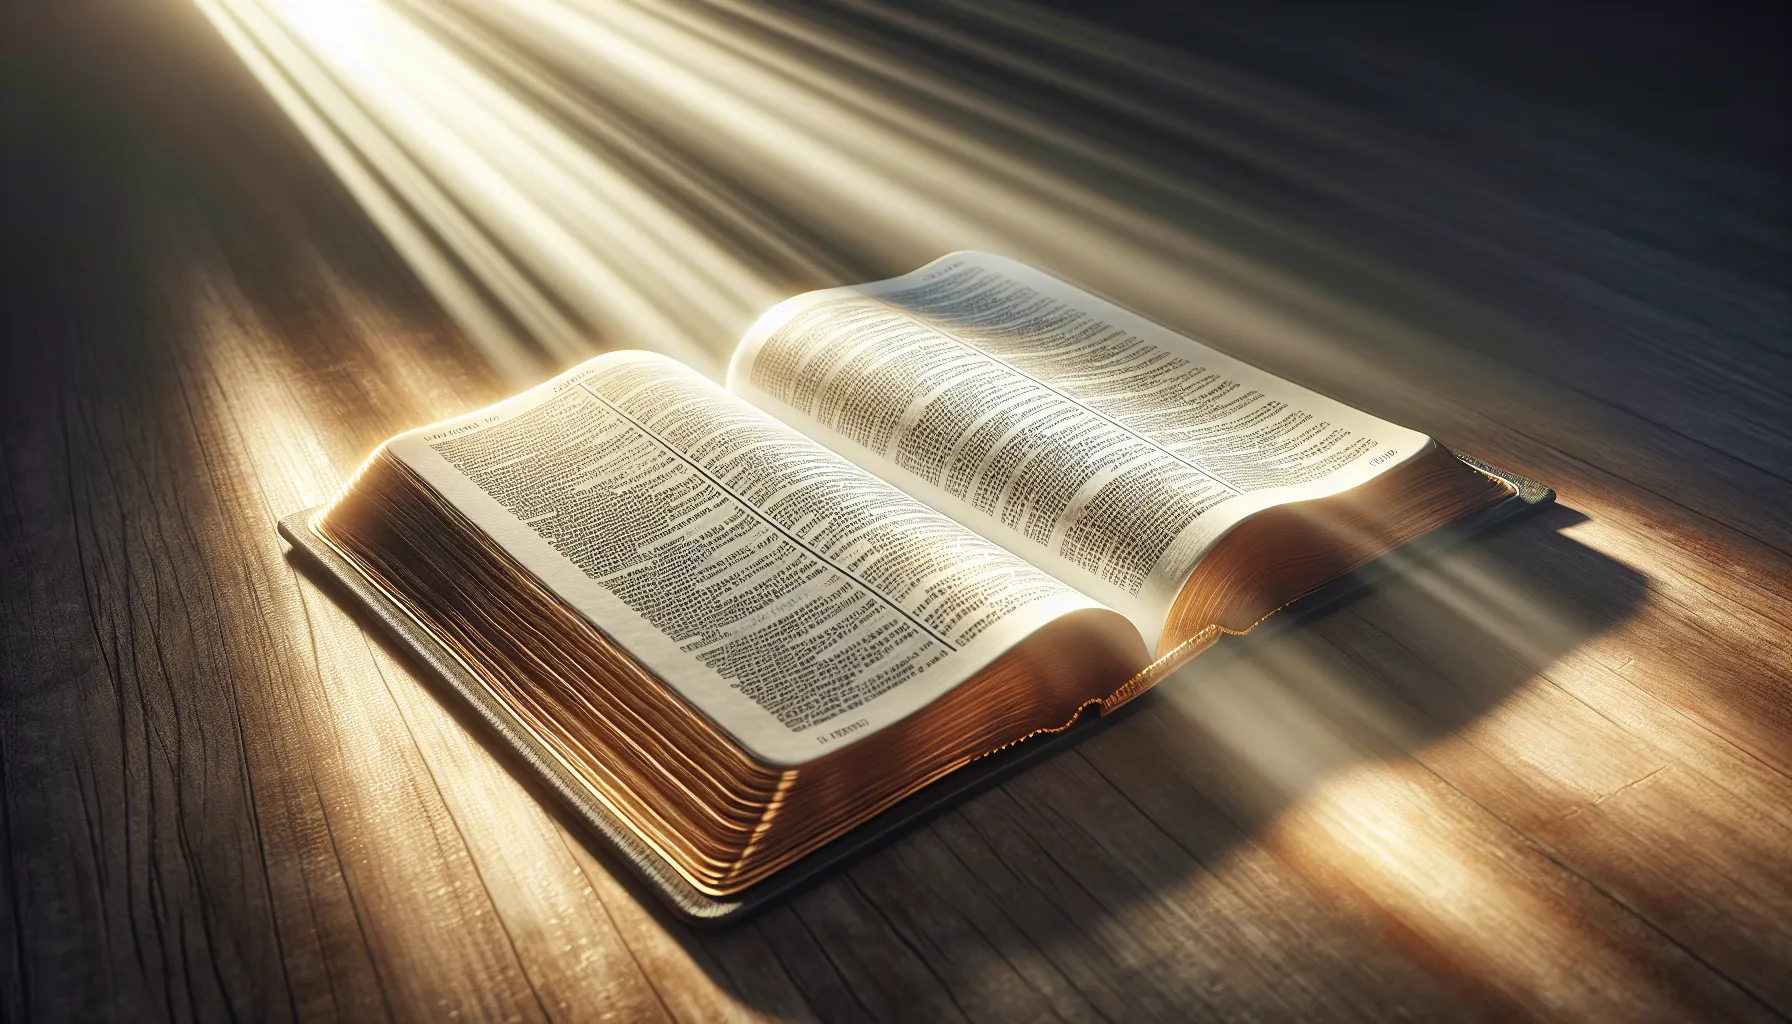 Imagen de una Biblia abierta con un rayo de luz iluminando las páginas, simbolizando discernimiento espiritual para identificar falsos maestros y profetas.